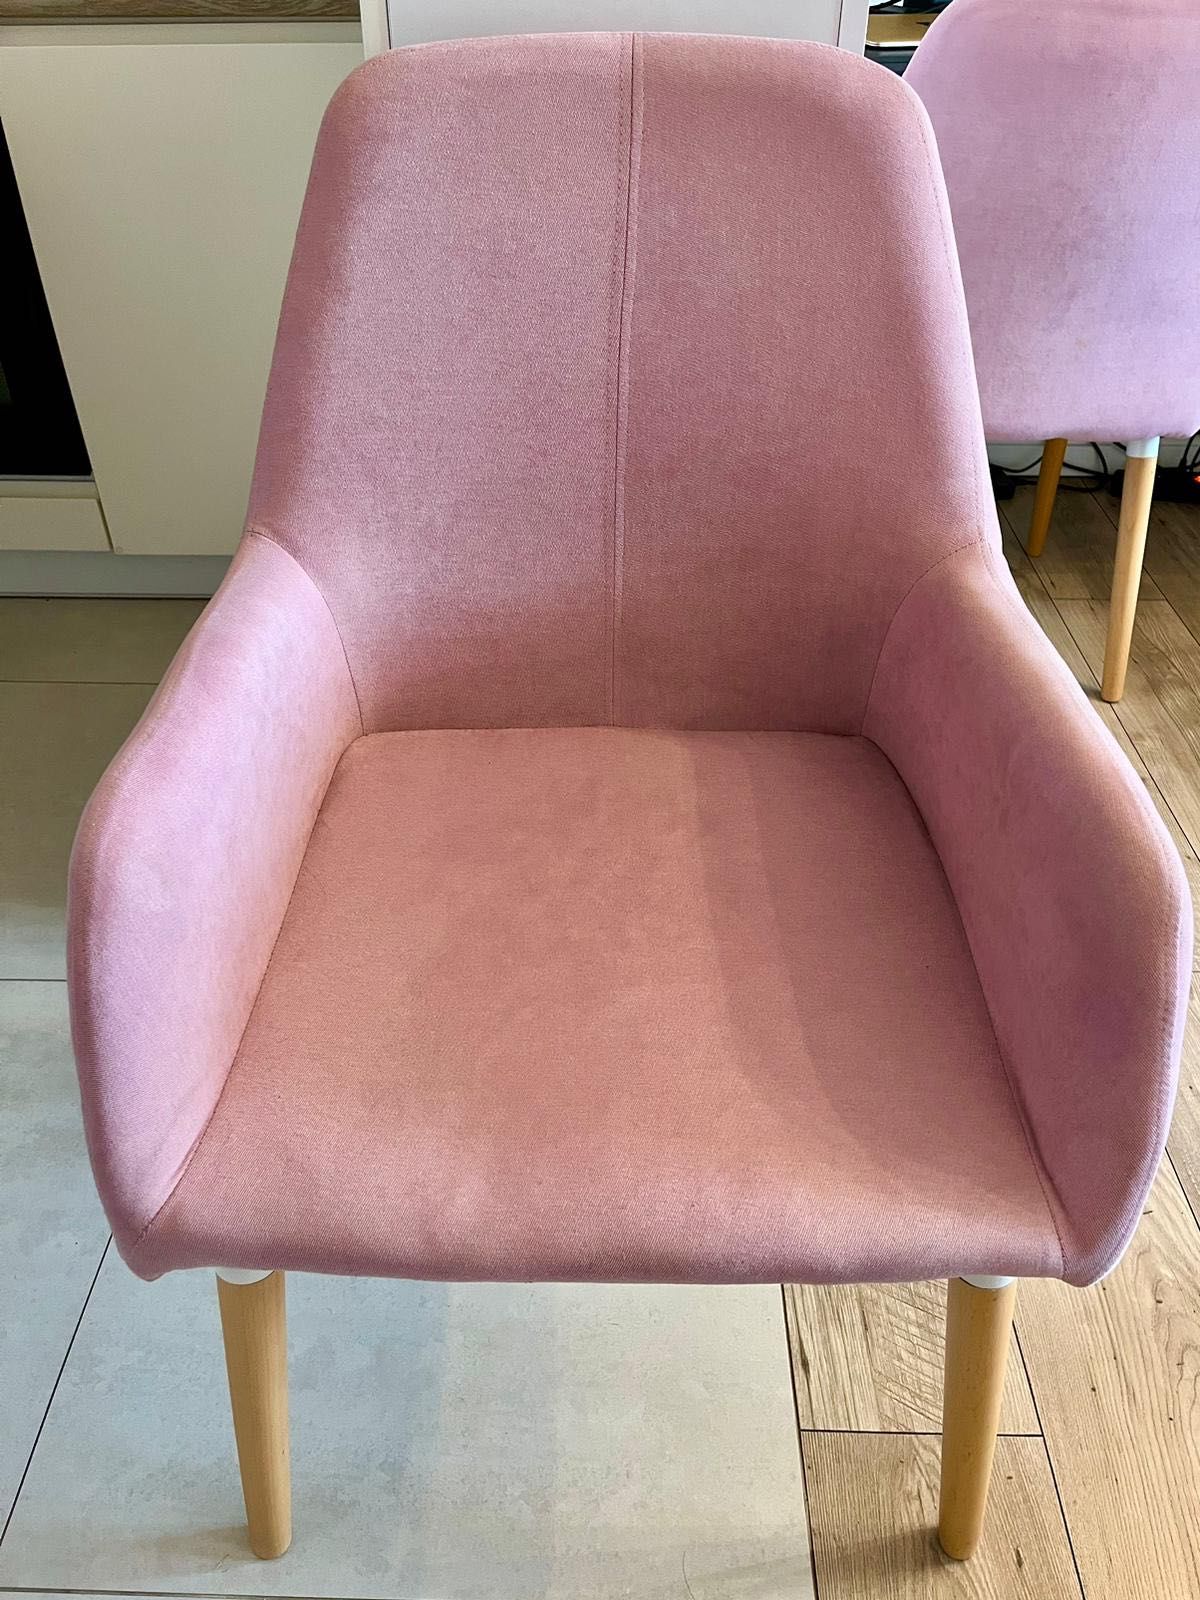 Krzesła materiałowe na drewnianych nogach w kolorze różowym